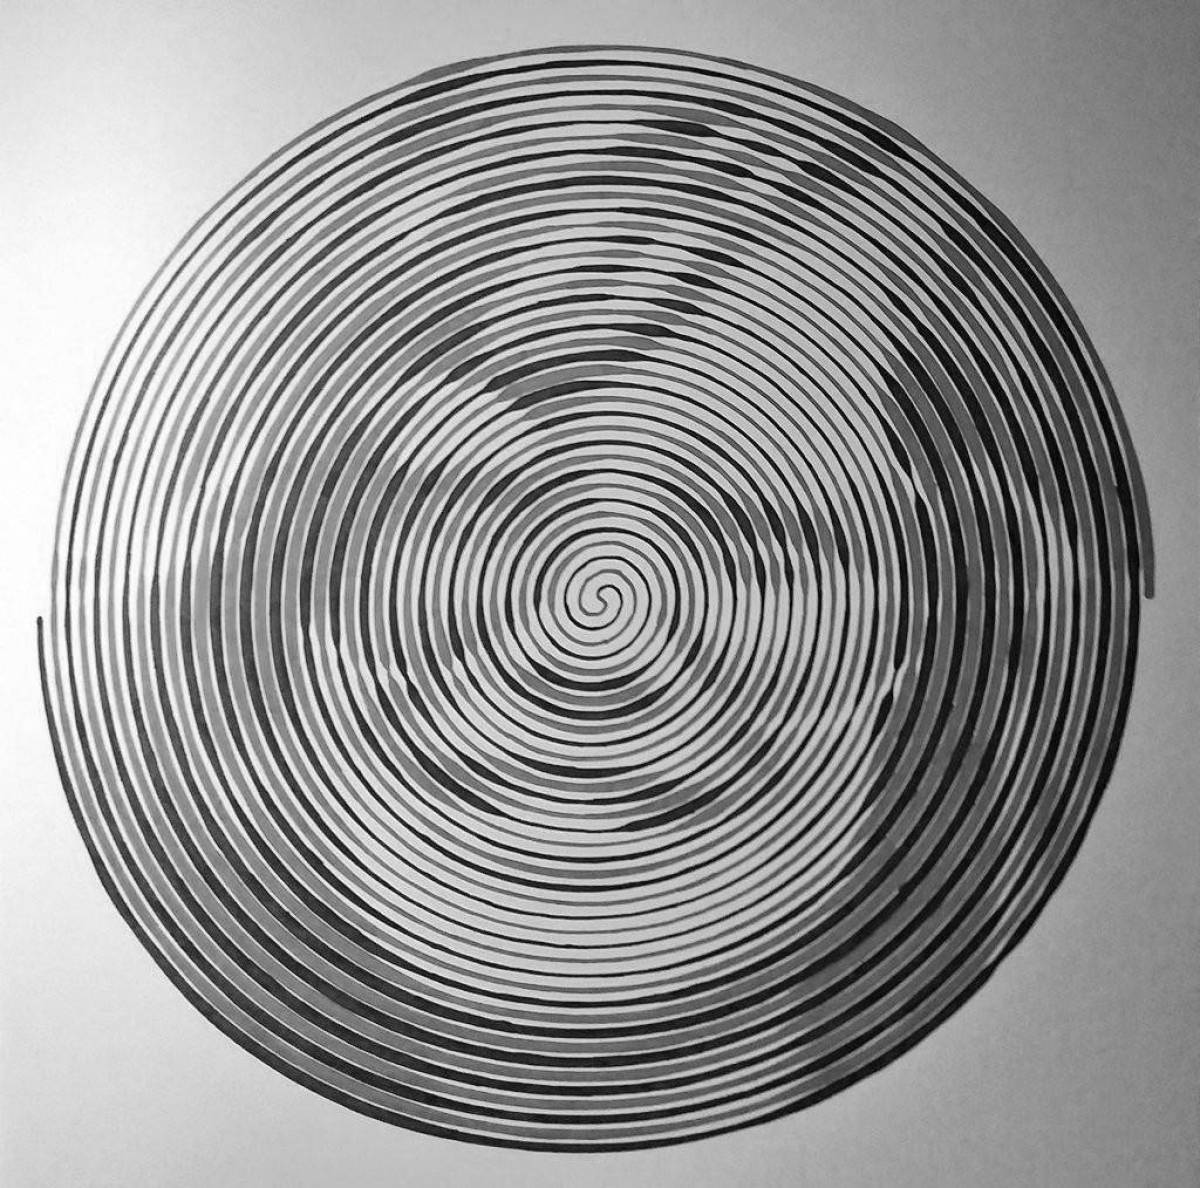 Фото Юмористическая спиральная живопись из фото